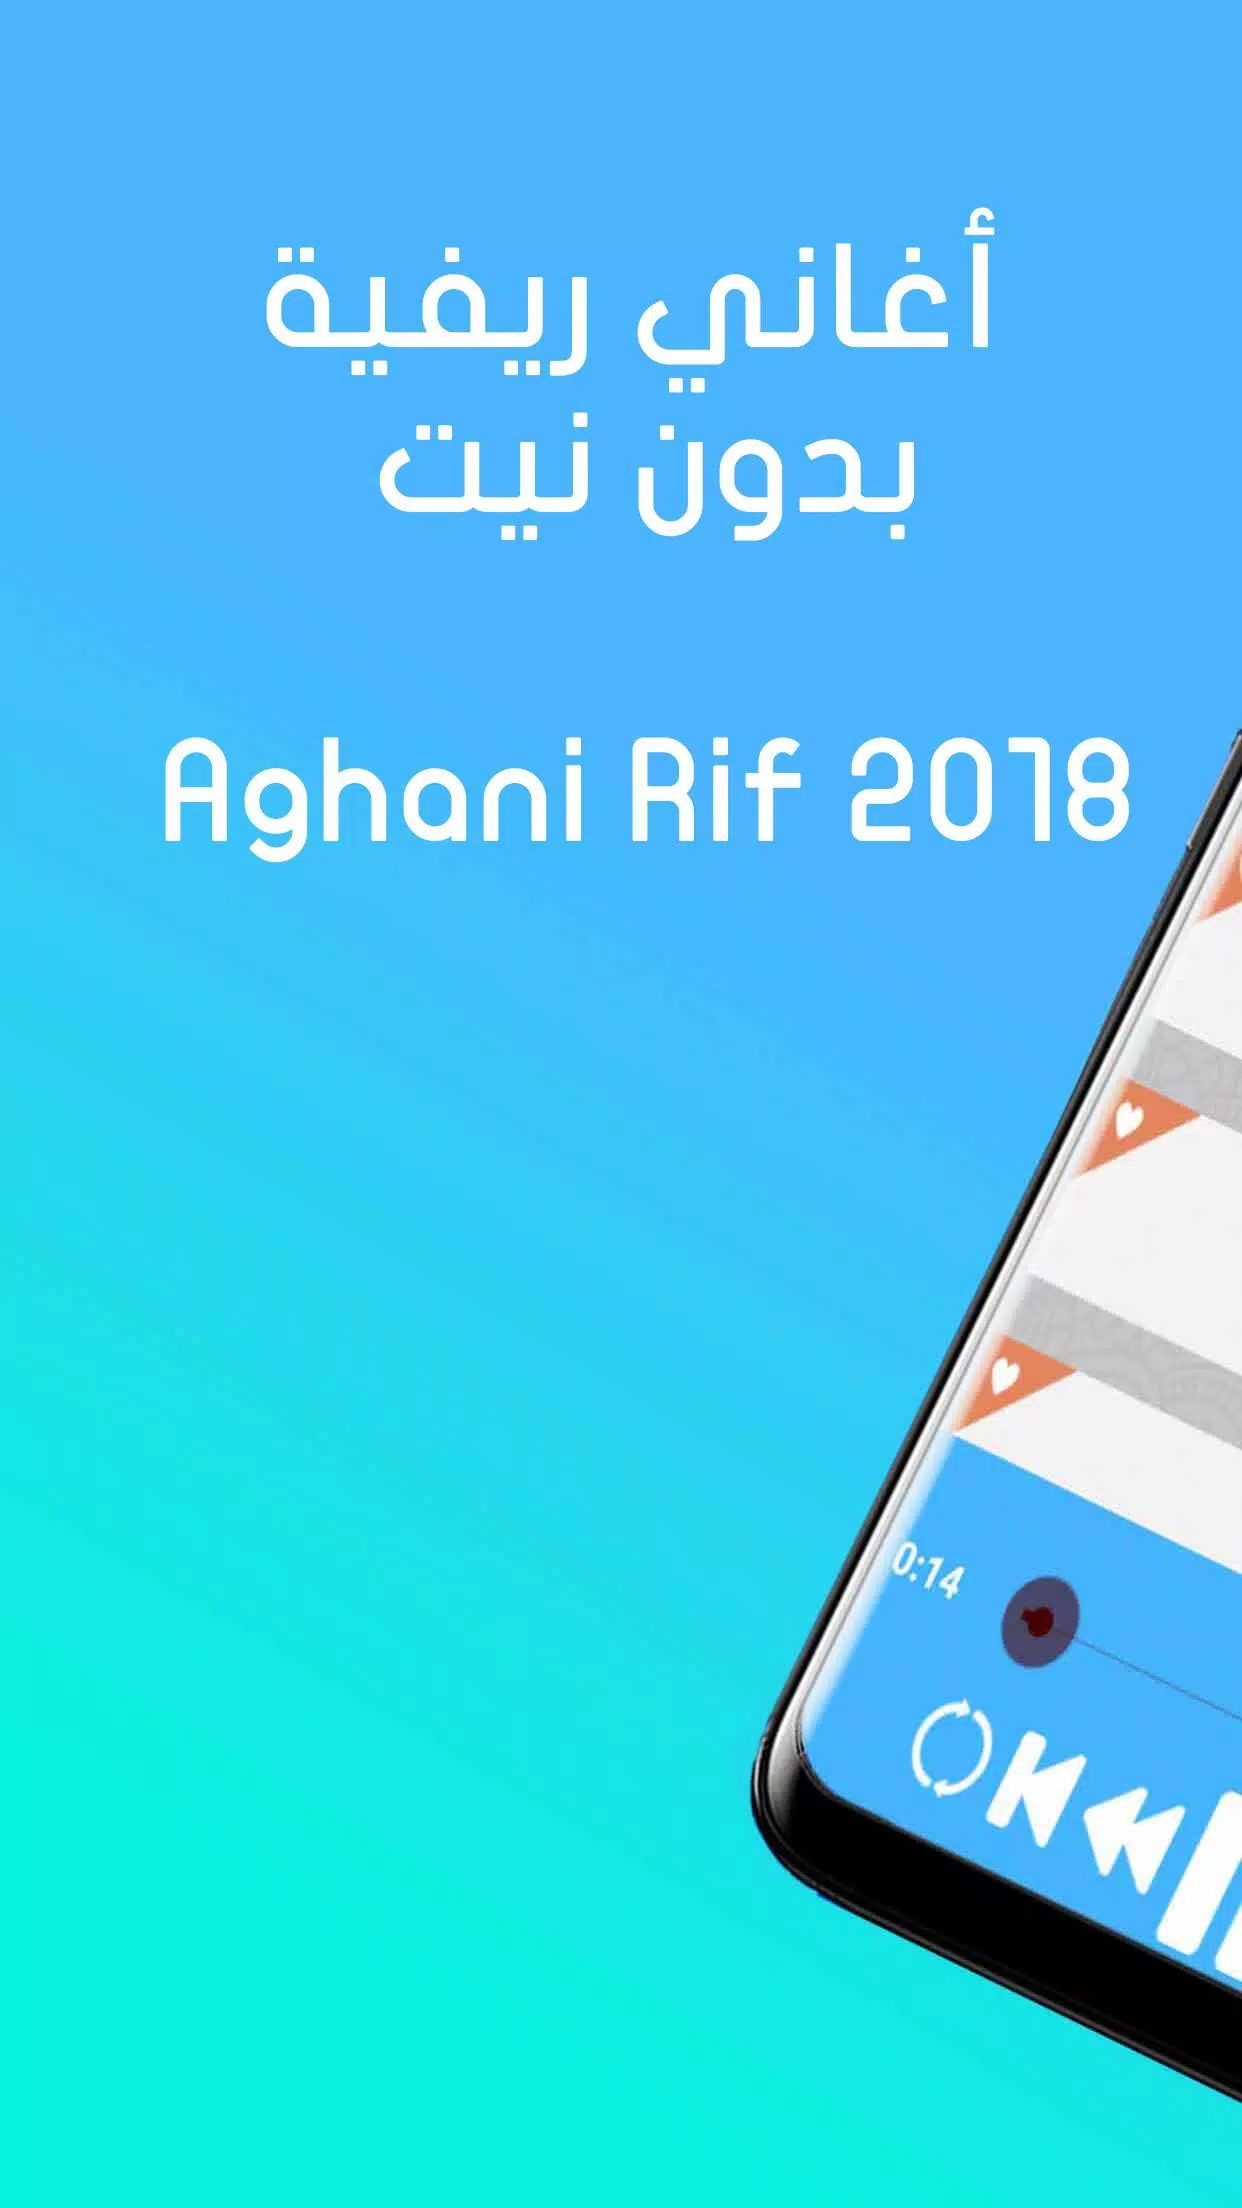 أغاني ريفية بدون نيت Rif aghani 2018 APK للاندرويد تنزيل